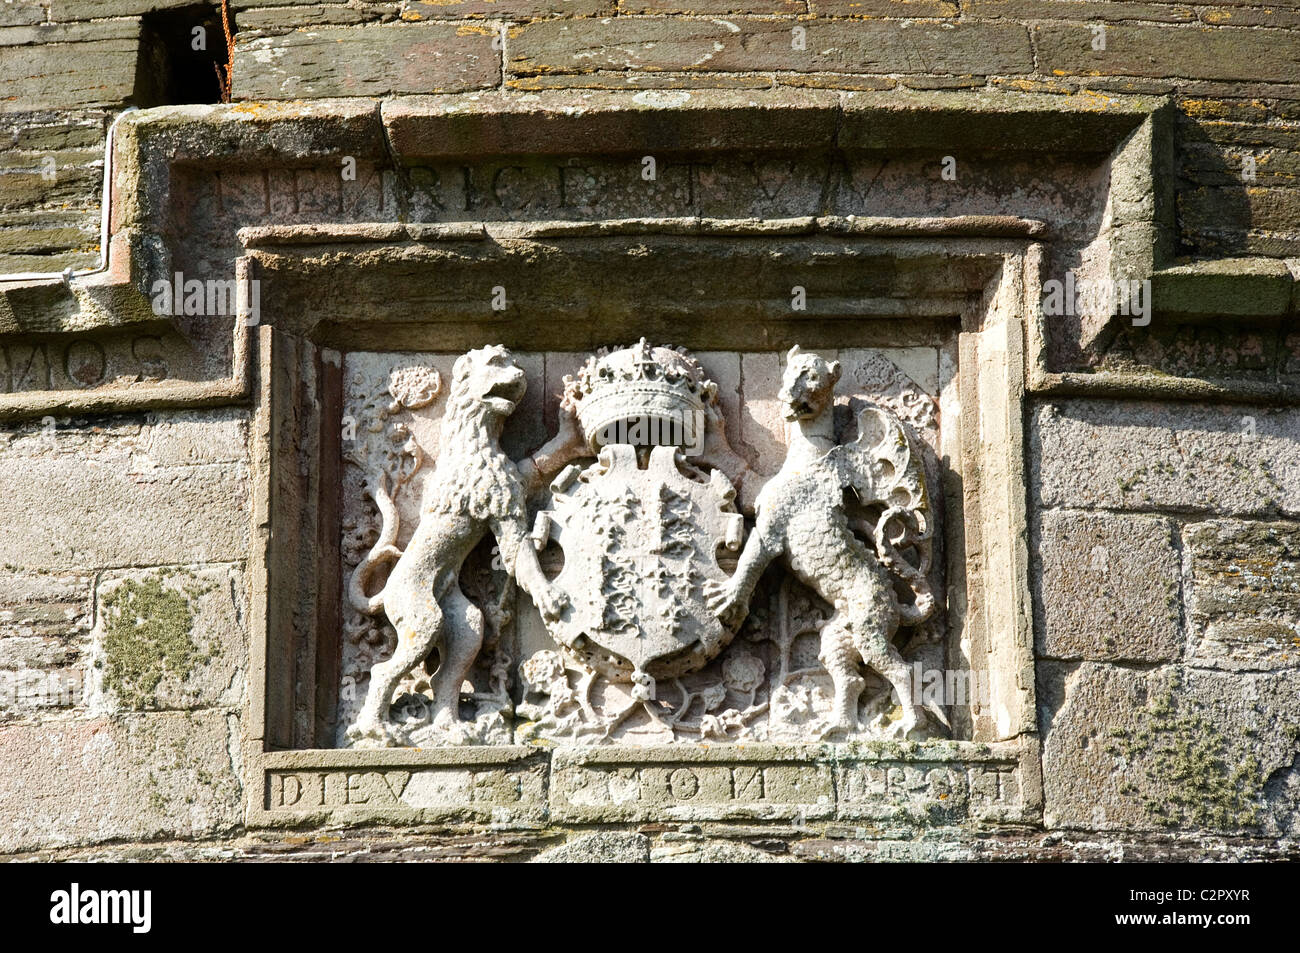 St. Mawes Castle. Detail das Wappen über dem Eingang zur Burg erscheint